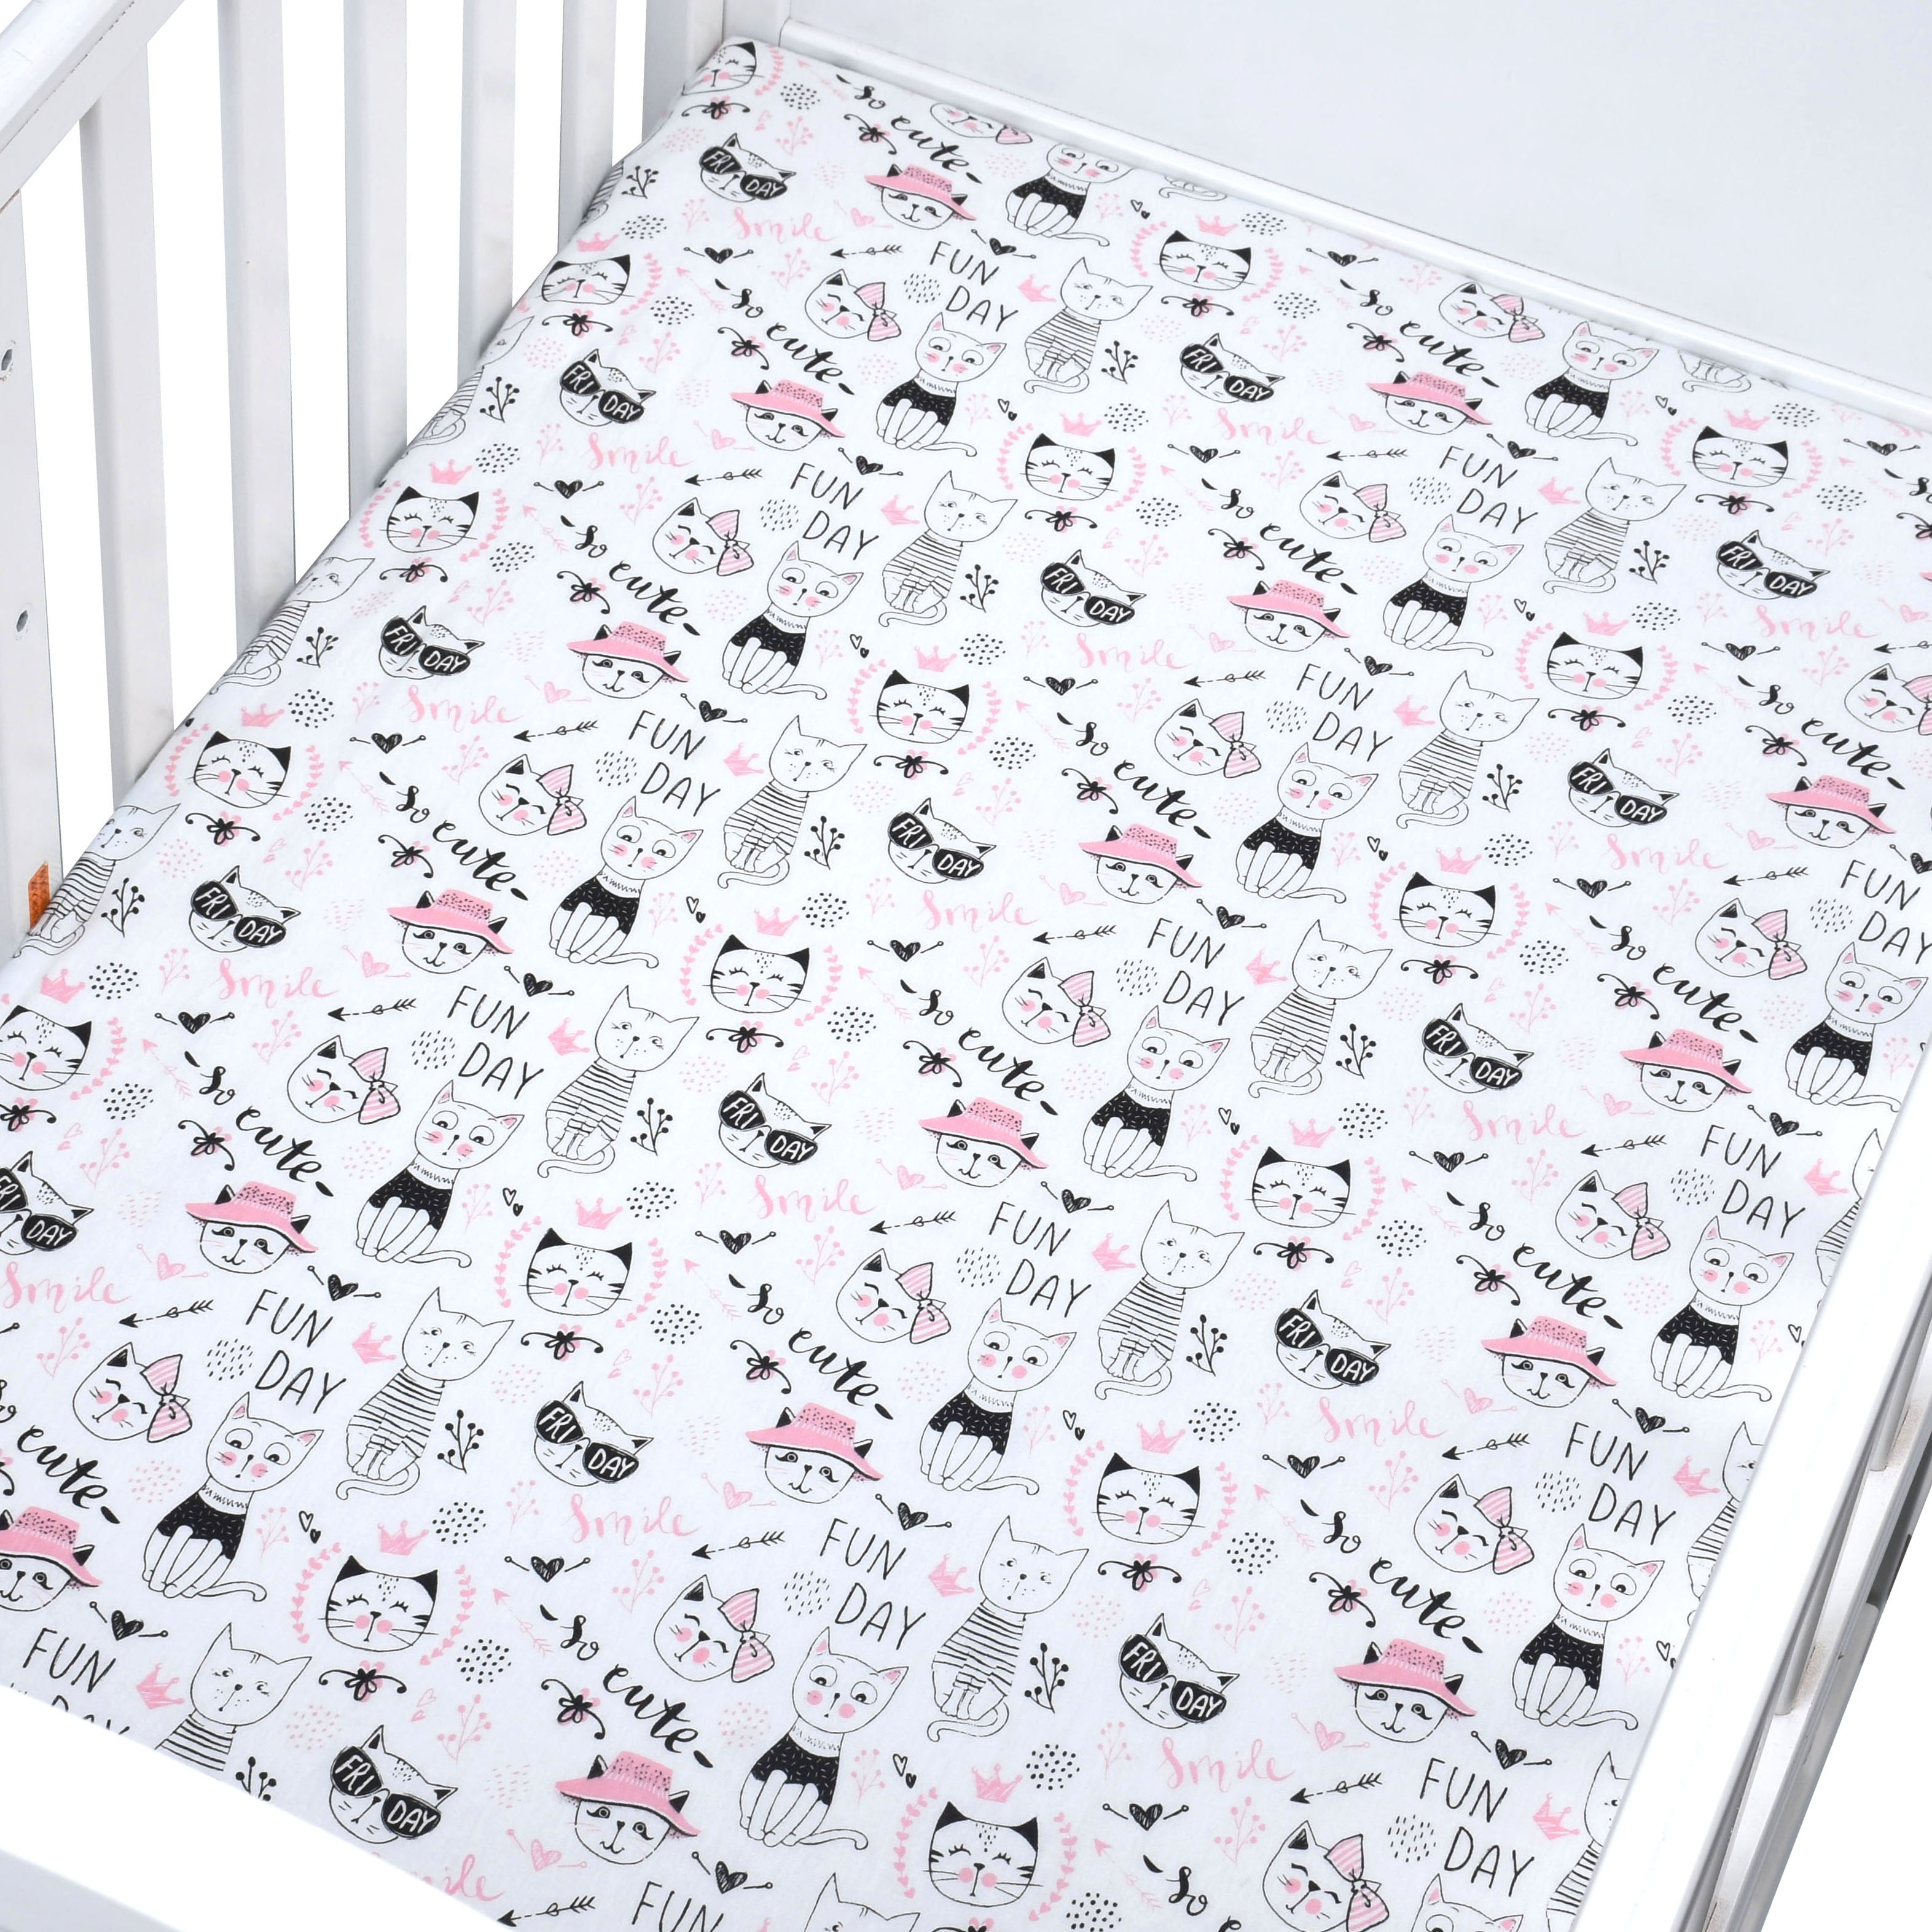 100%  økologisk bomuldsspædbarn baby sengetøjspude sengetøjssæt lagen baby børnesengetøj